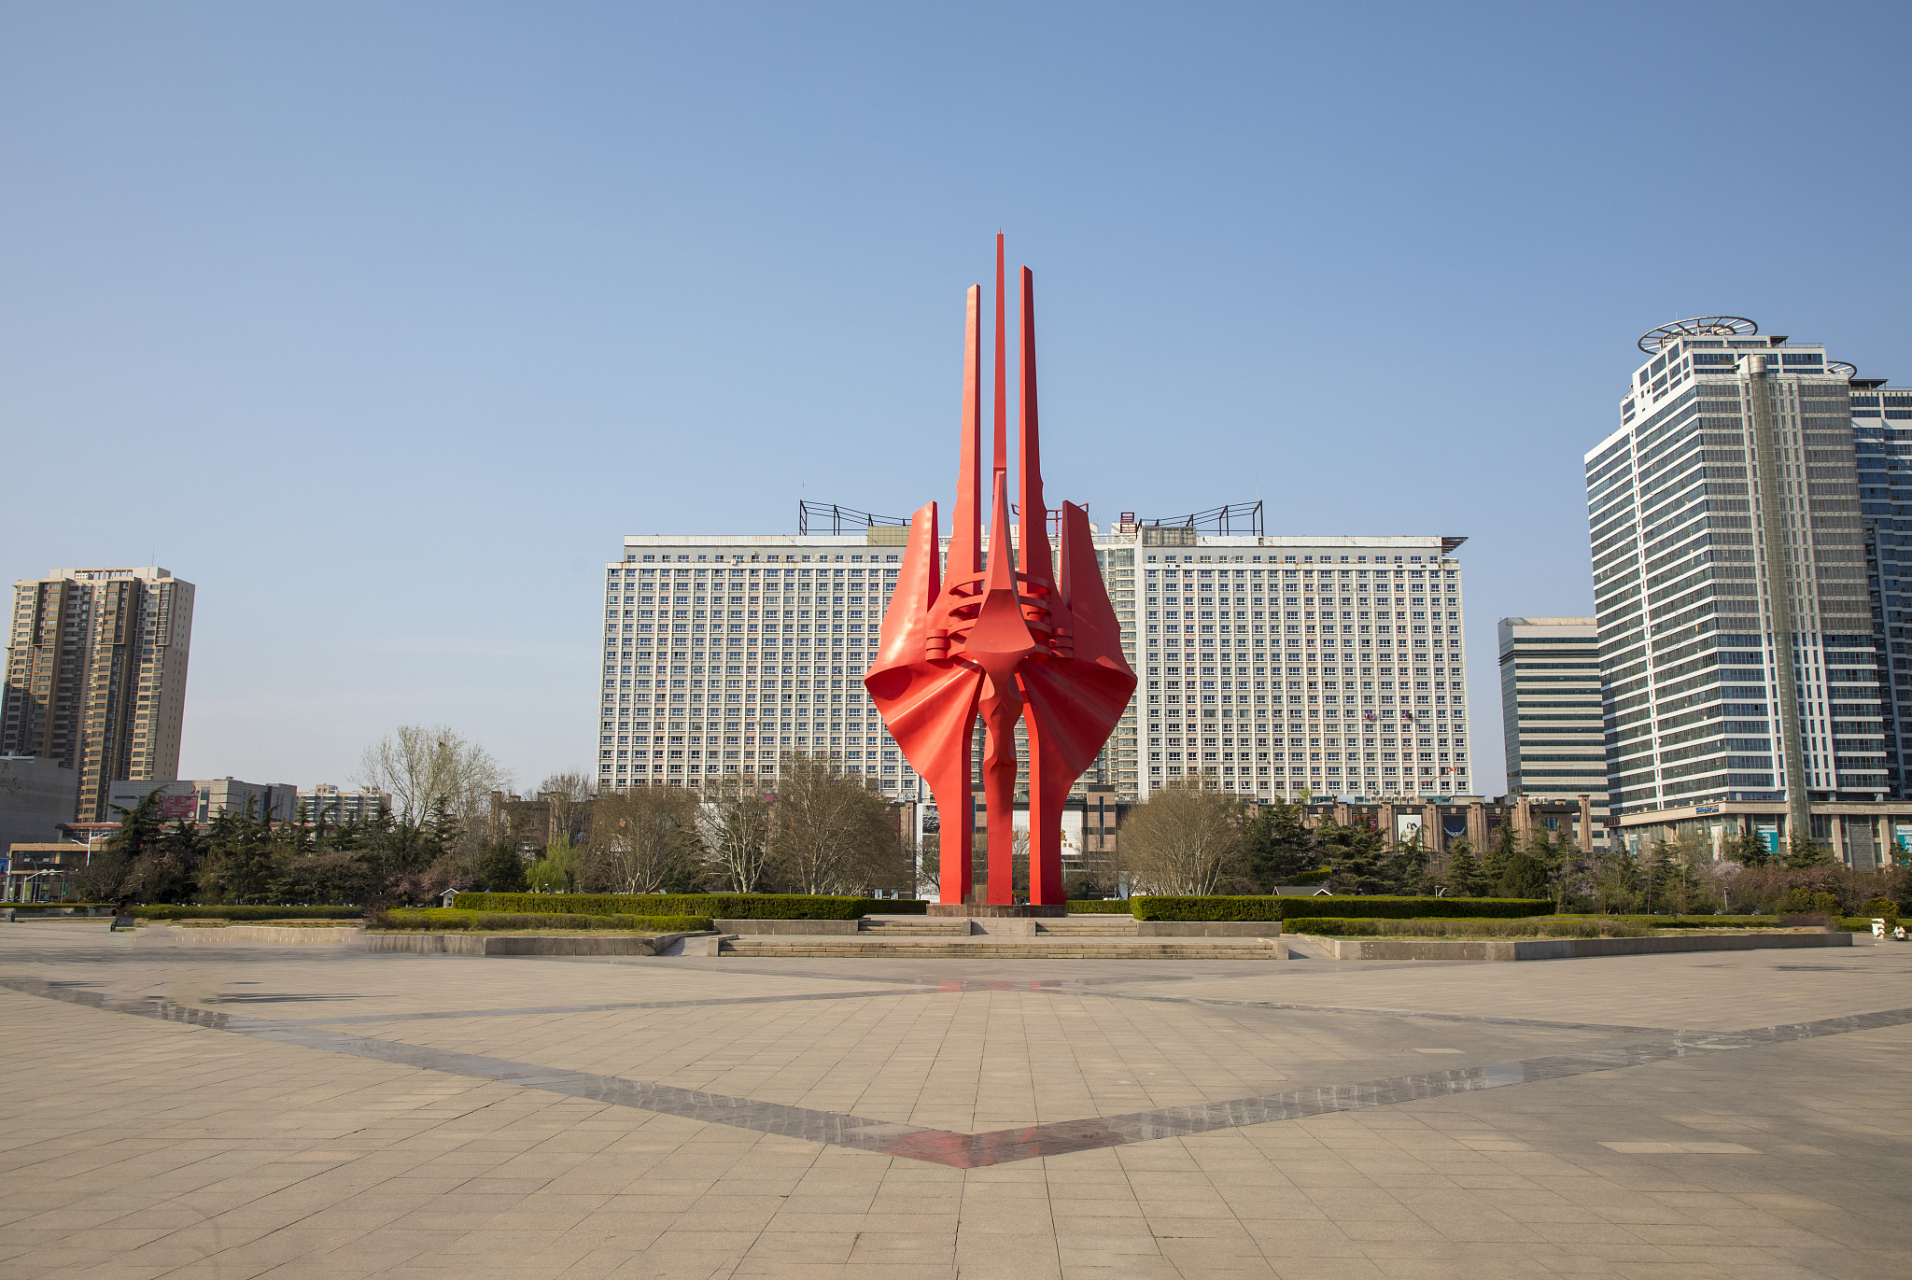 胜利广场是为纪念中国人民解放军渡江战役胜利而建的纪念性广场